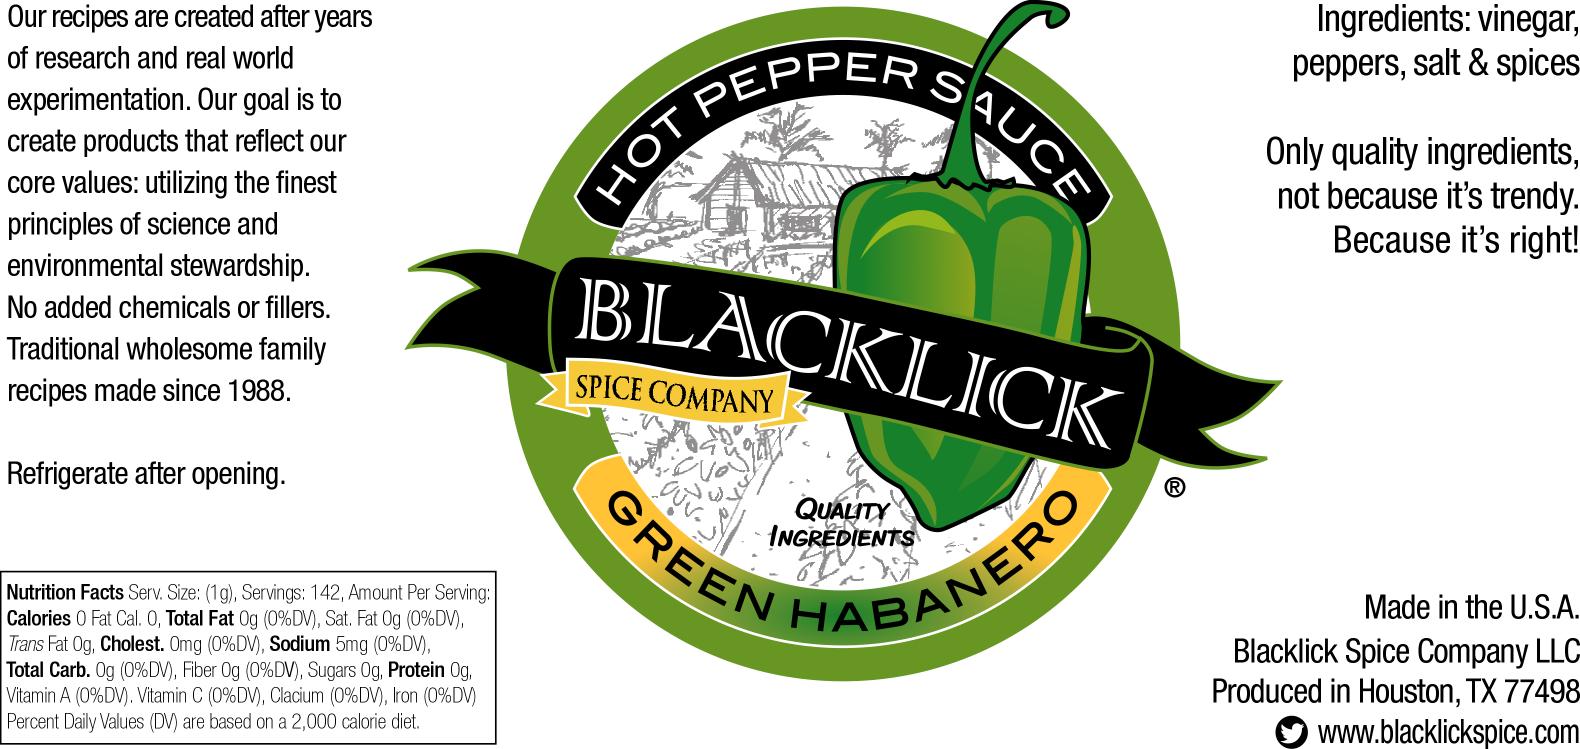 Green Habanero - Blacklick Spice Company